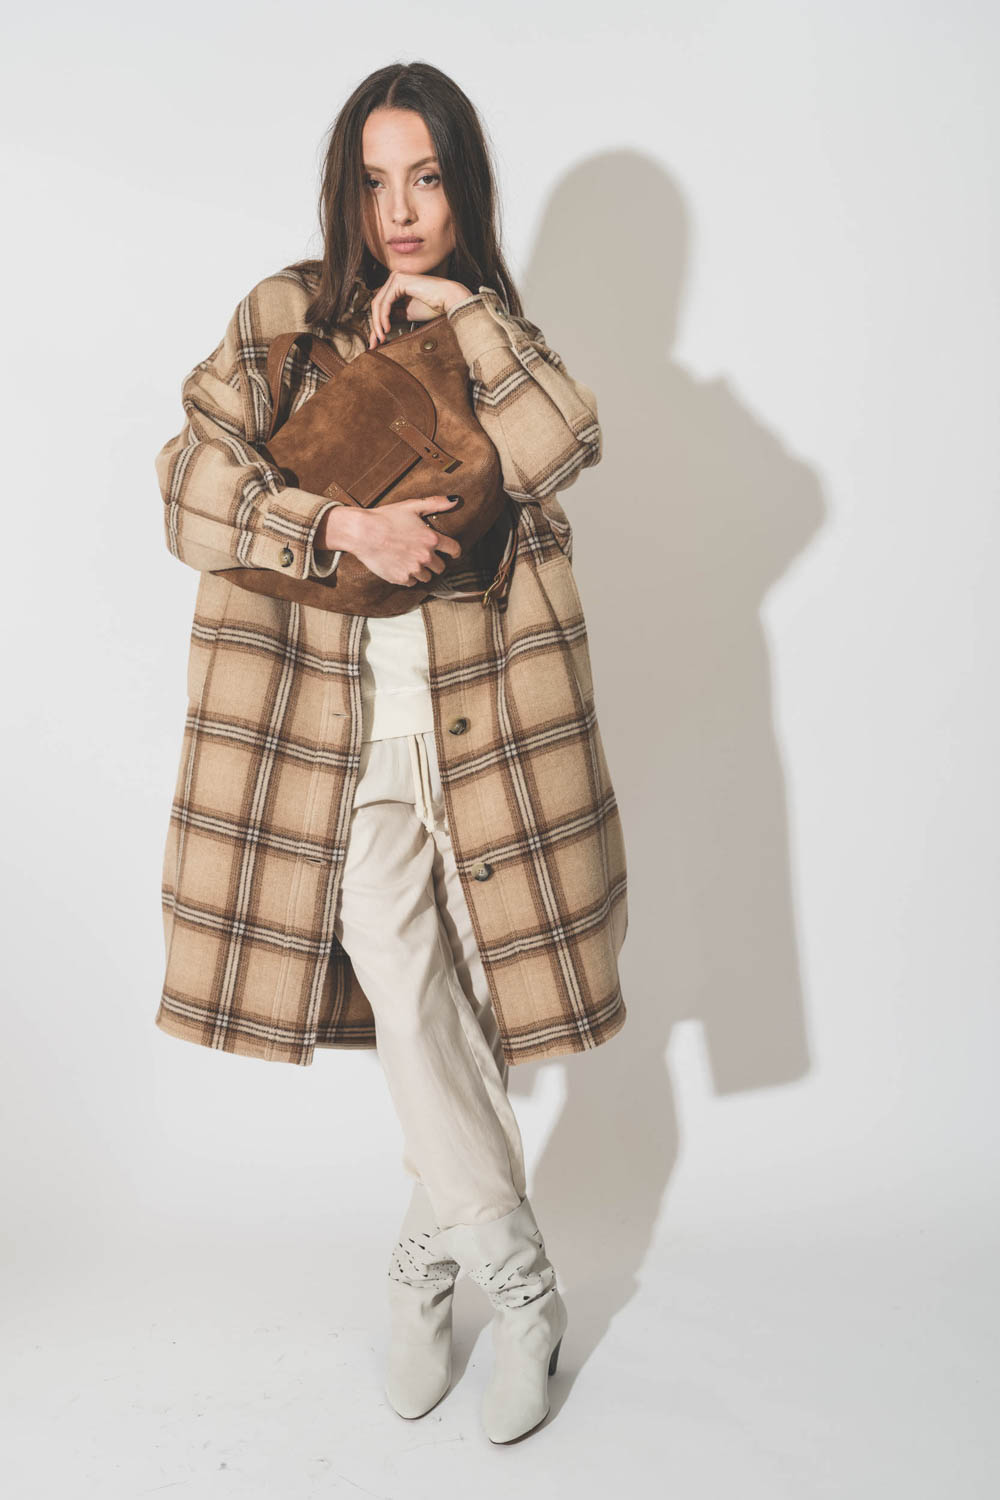 Manteau forme chemise longue à carreaux camel Fontizia Isabel Marant Etoile. Porté avec un sac en cuir suédé tabac.